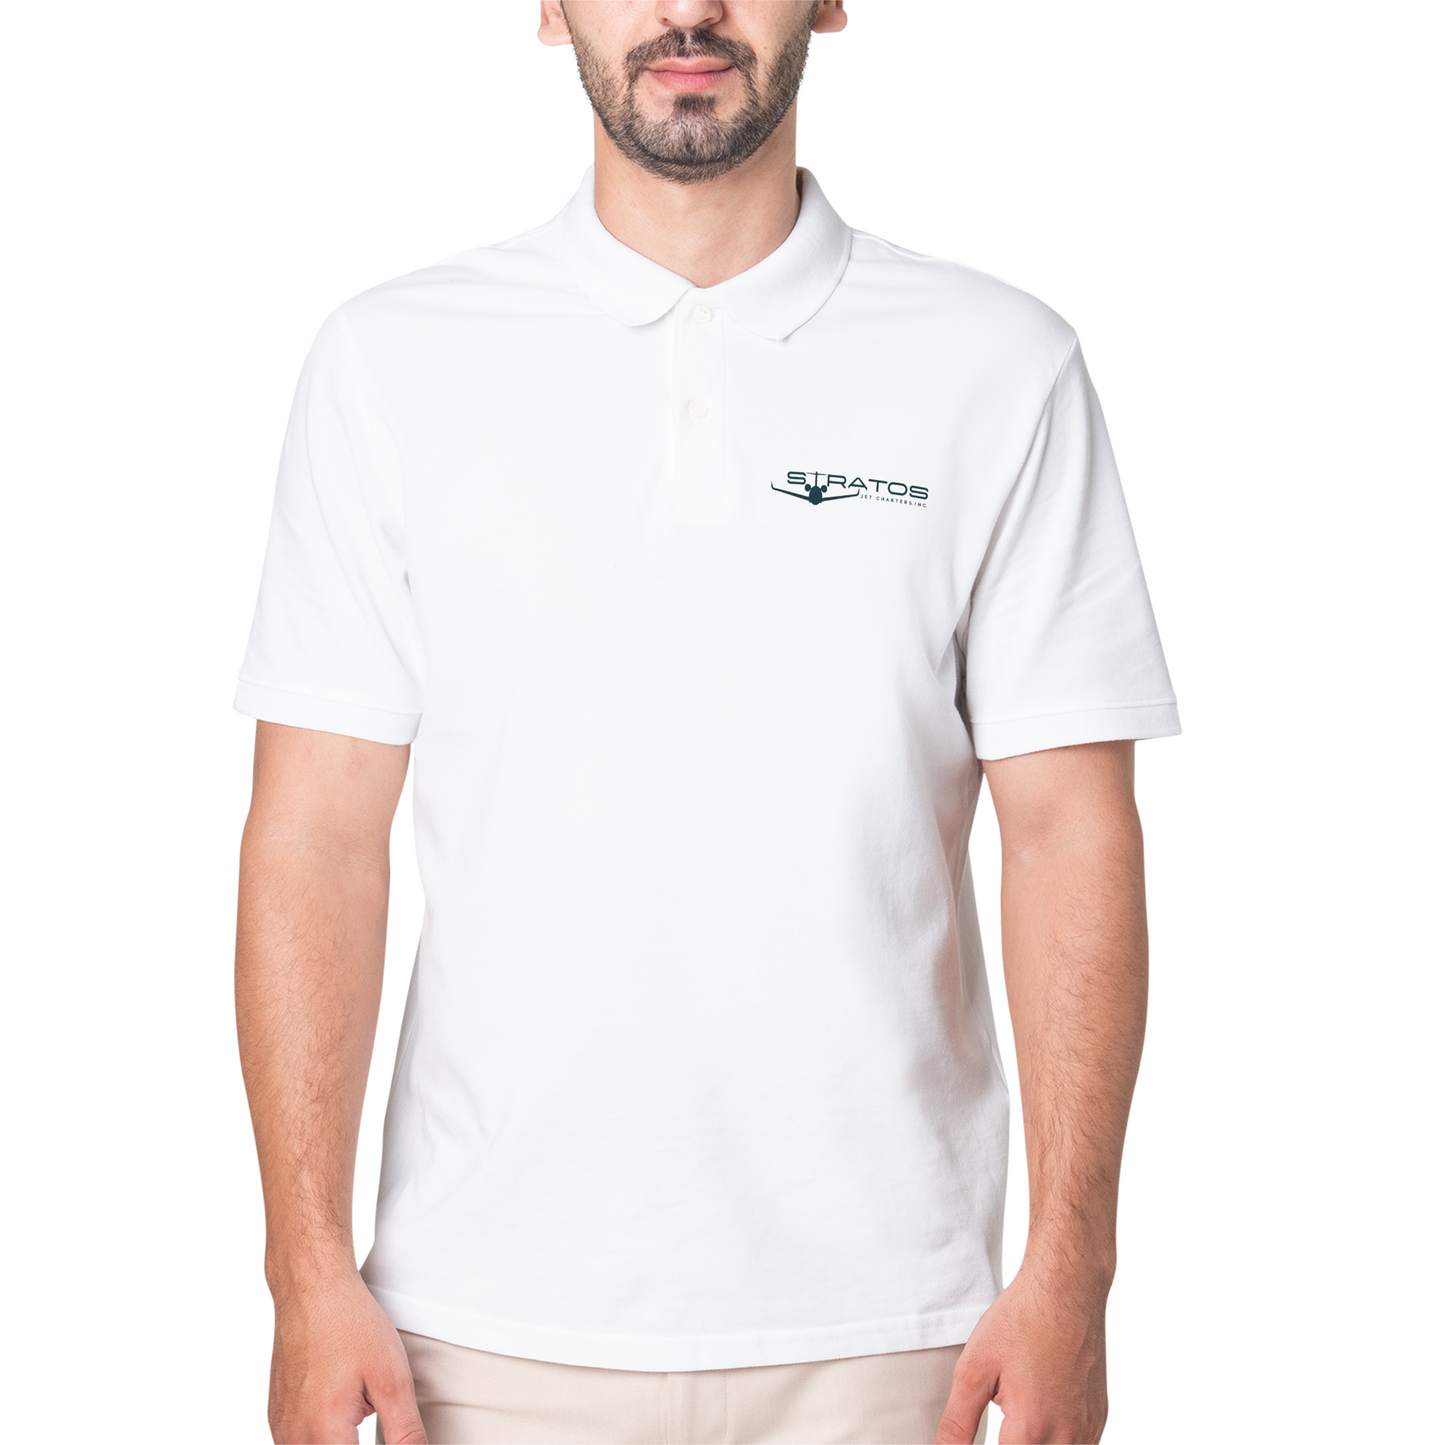 Stratos Polo shirt - White